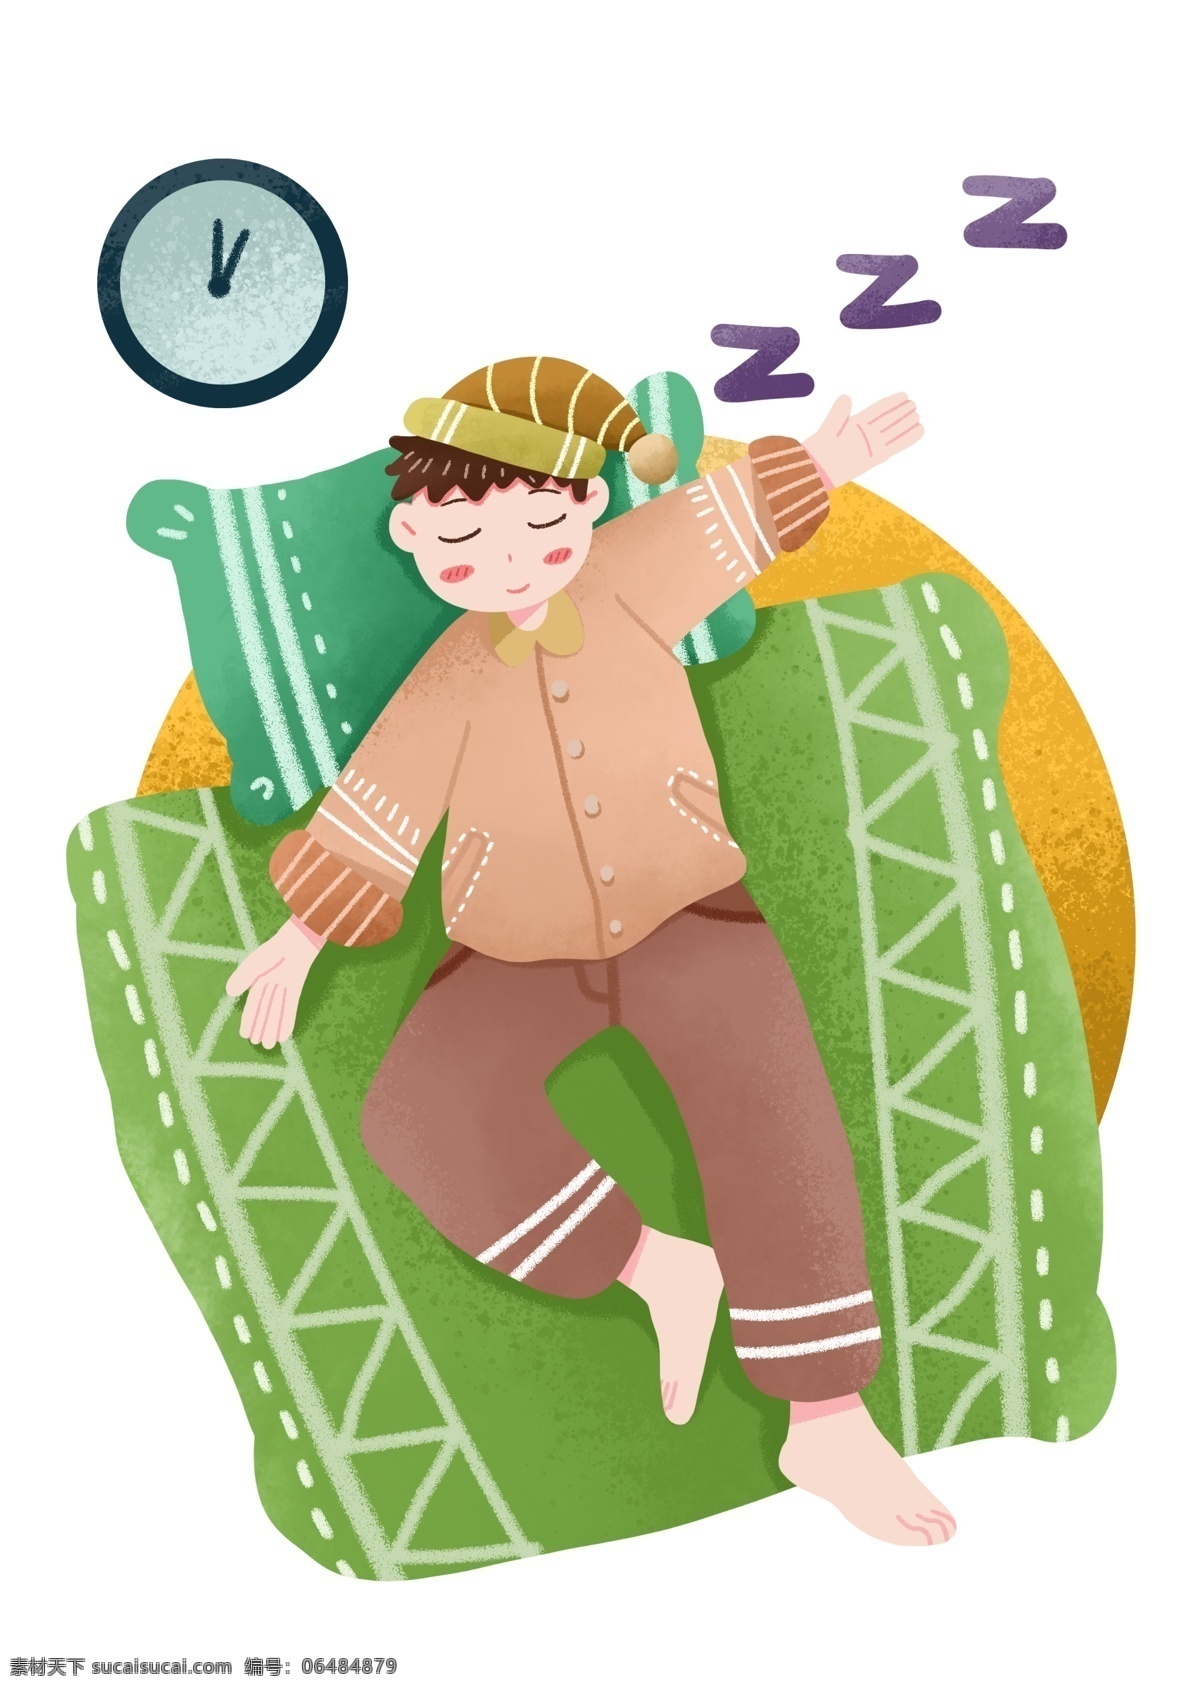 戴 睡帽 睡觉 小 男孩 插画 睡觉的小男孩 绿色枕头 卡通插画 睡眠 世界睡眠日 卡通人物插画